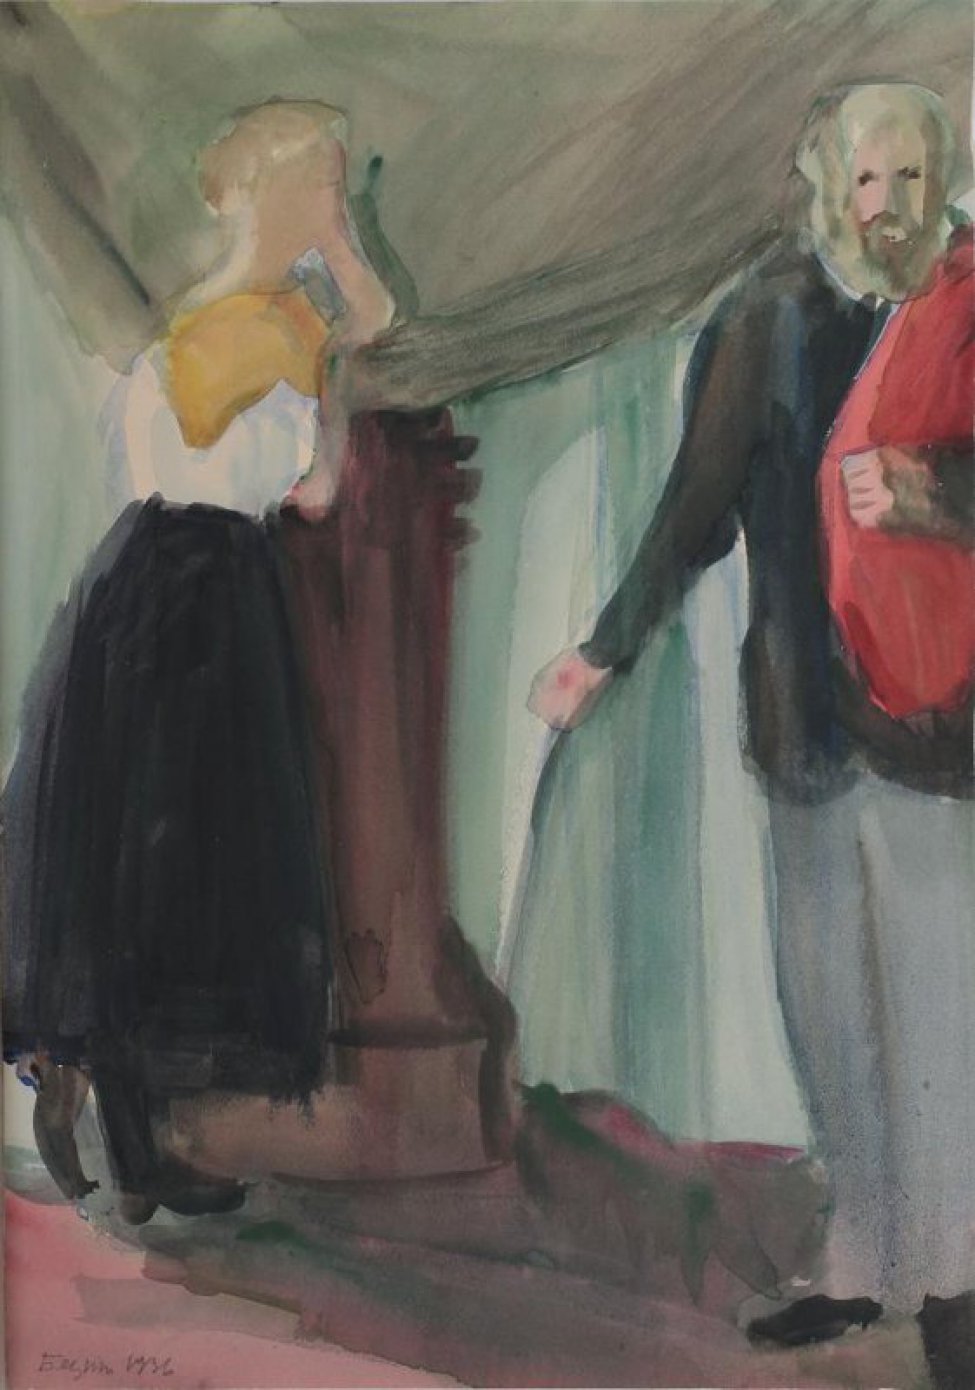 На фоне зеленоватых драпировок изображены в рост: слева - женщина (в профиль) - светловолосая в белой блузке, черной юбке и черных сапожках, на грудь наброшена желтая ткань, стоящая облокотившись о коричневую тумбу;  справа - мужчина (анфас), светловолосый, бородатый, в черном пиджаке, серых брюках, черных ботинках; через плечо перекинута красная ткань.